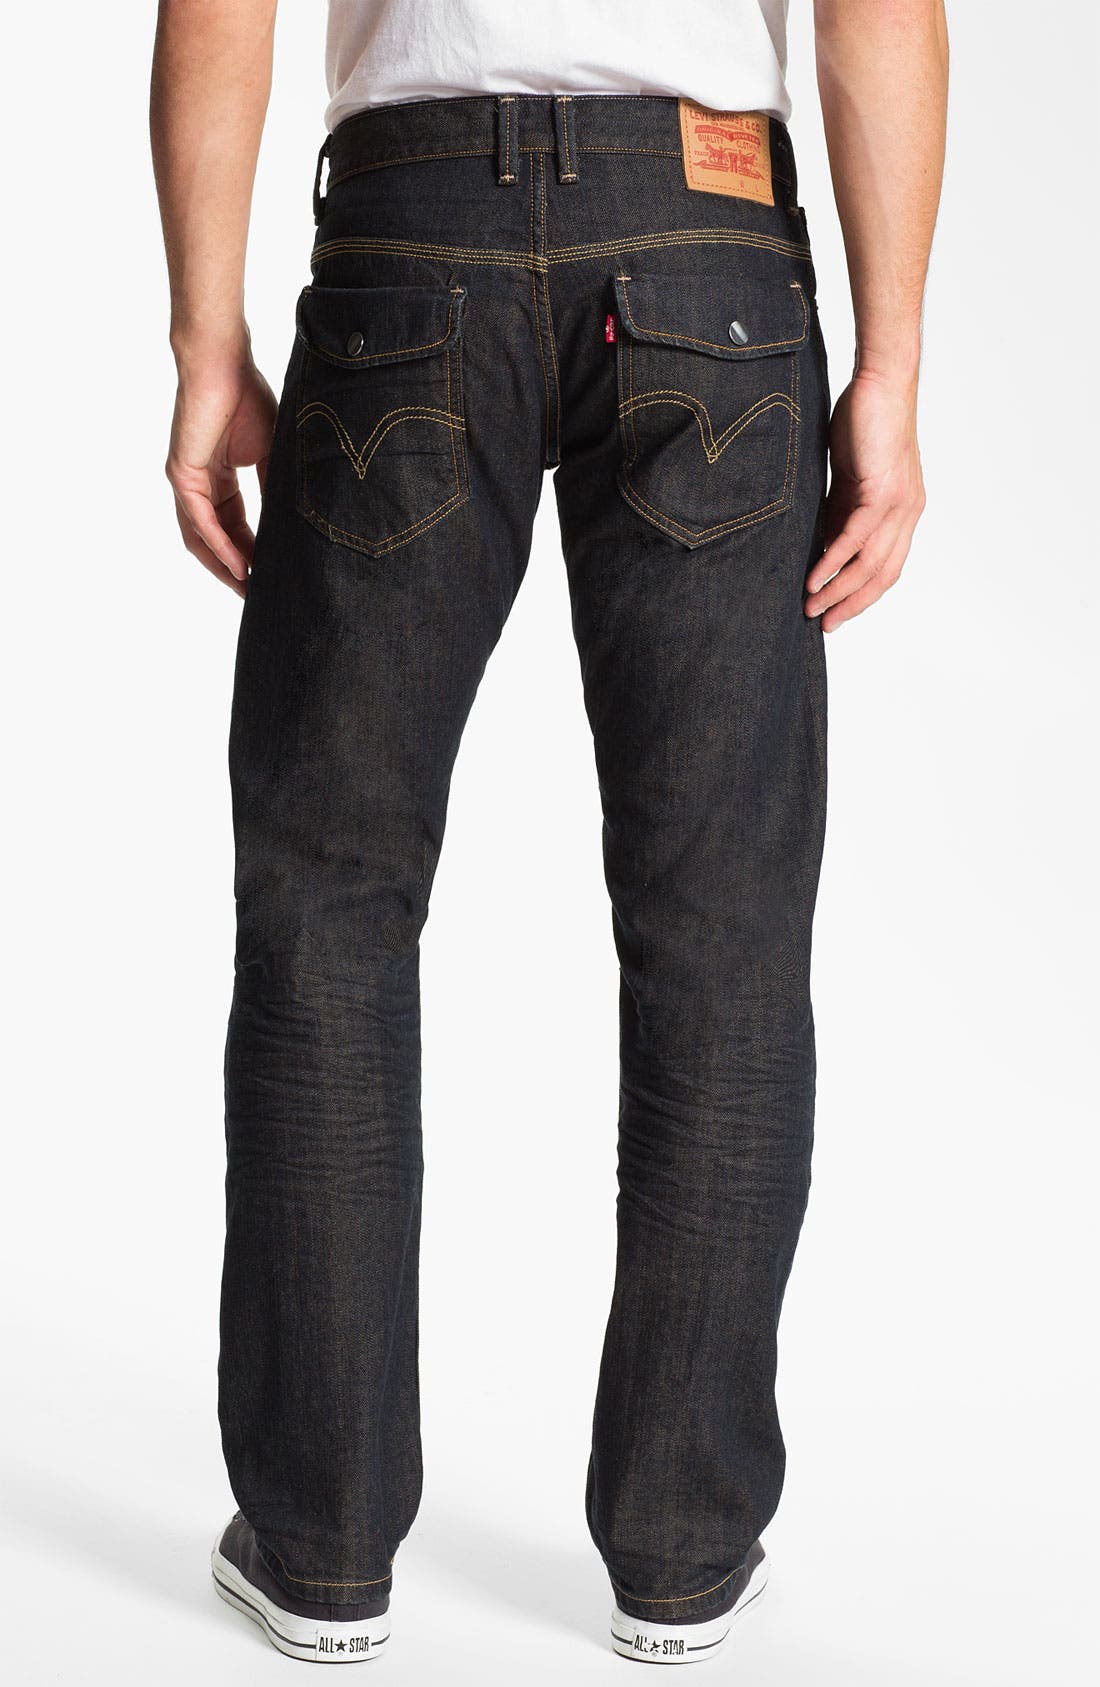 levis flap pocket jeans